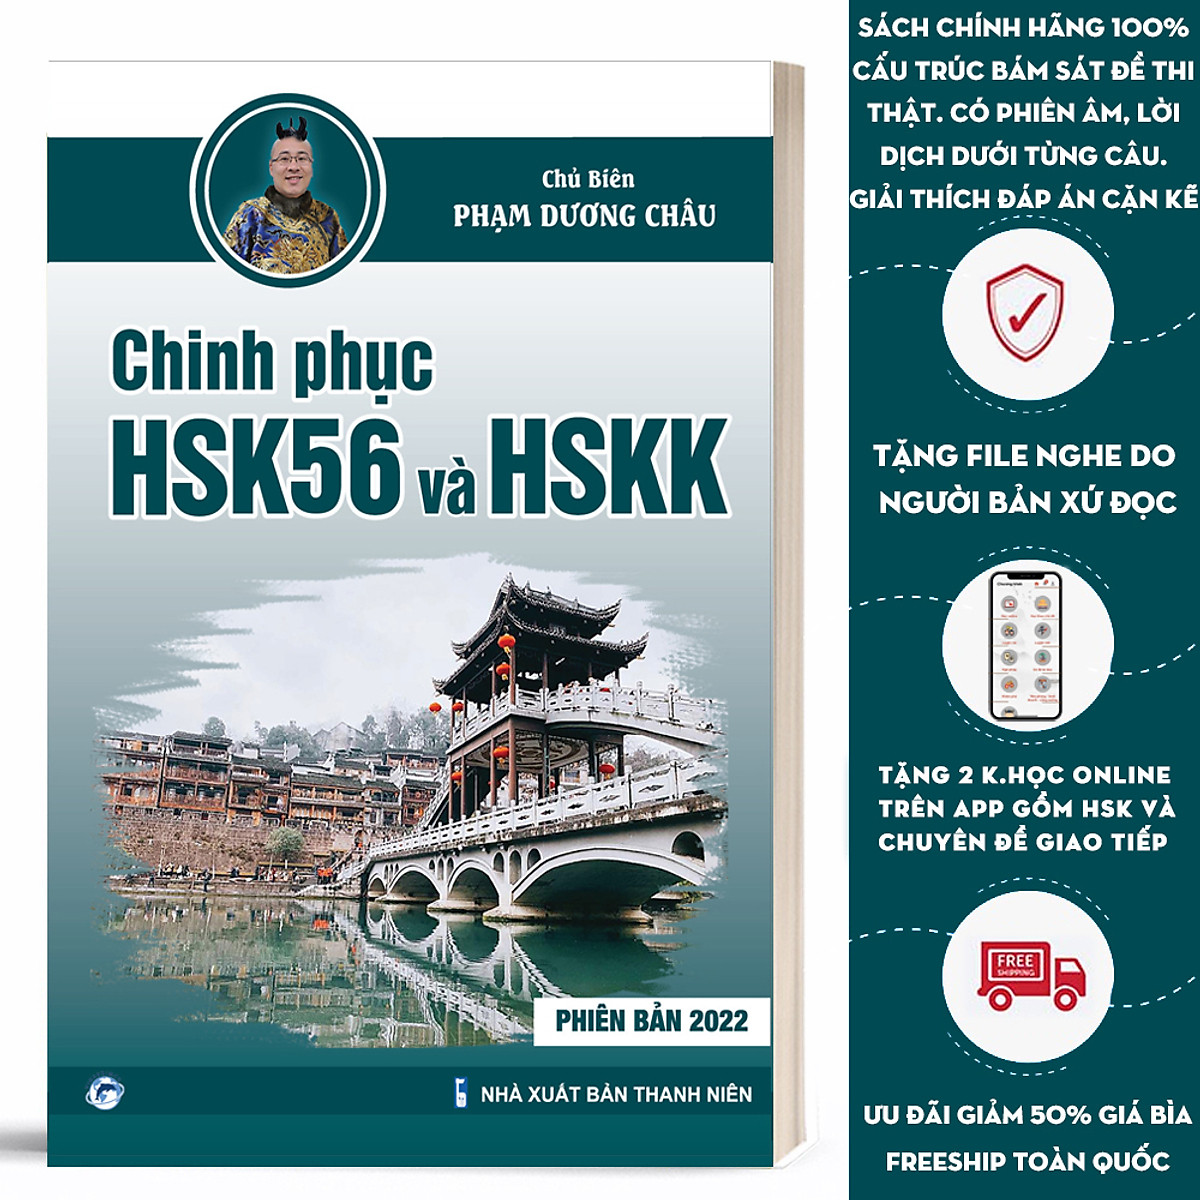 Sách - Chinh Phục HSK 5 và HSK K - Phạm Dương Châu - Phiên Bản Mới 2021 - Đề Thi HSK Chuẩn - Kèm File Nghe Chuẩn Giọng Bản Xứ - Video Giáo Viên Hướng Dẫn